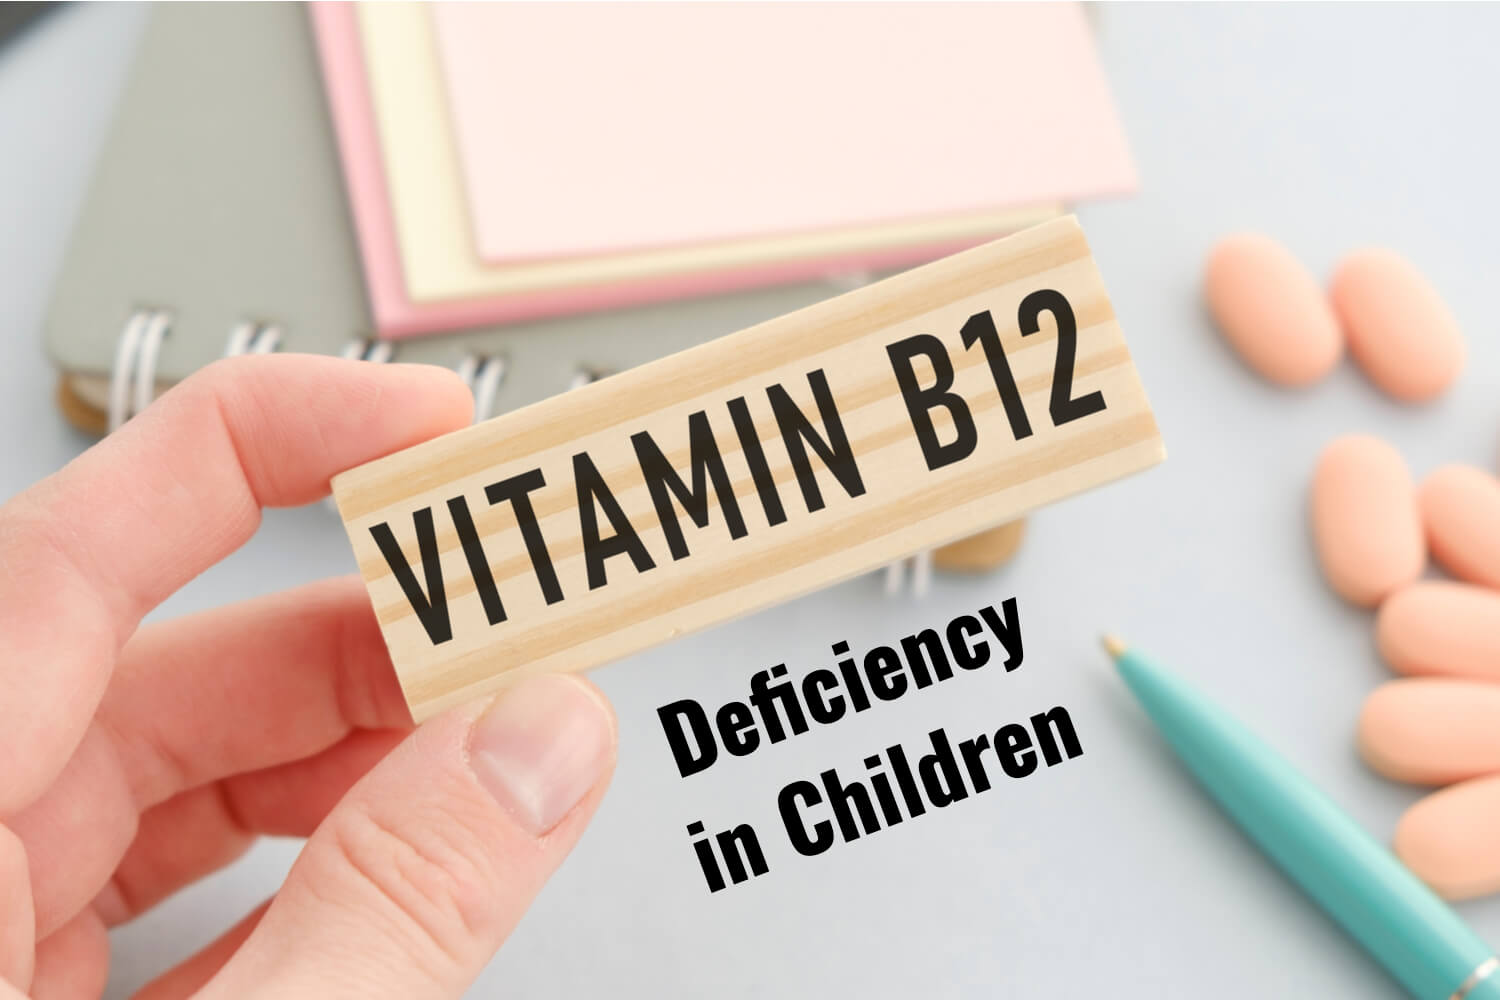 Vitamin B12 Deficiency in children